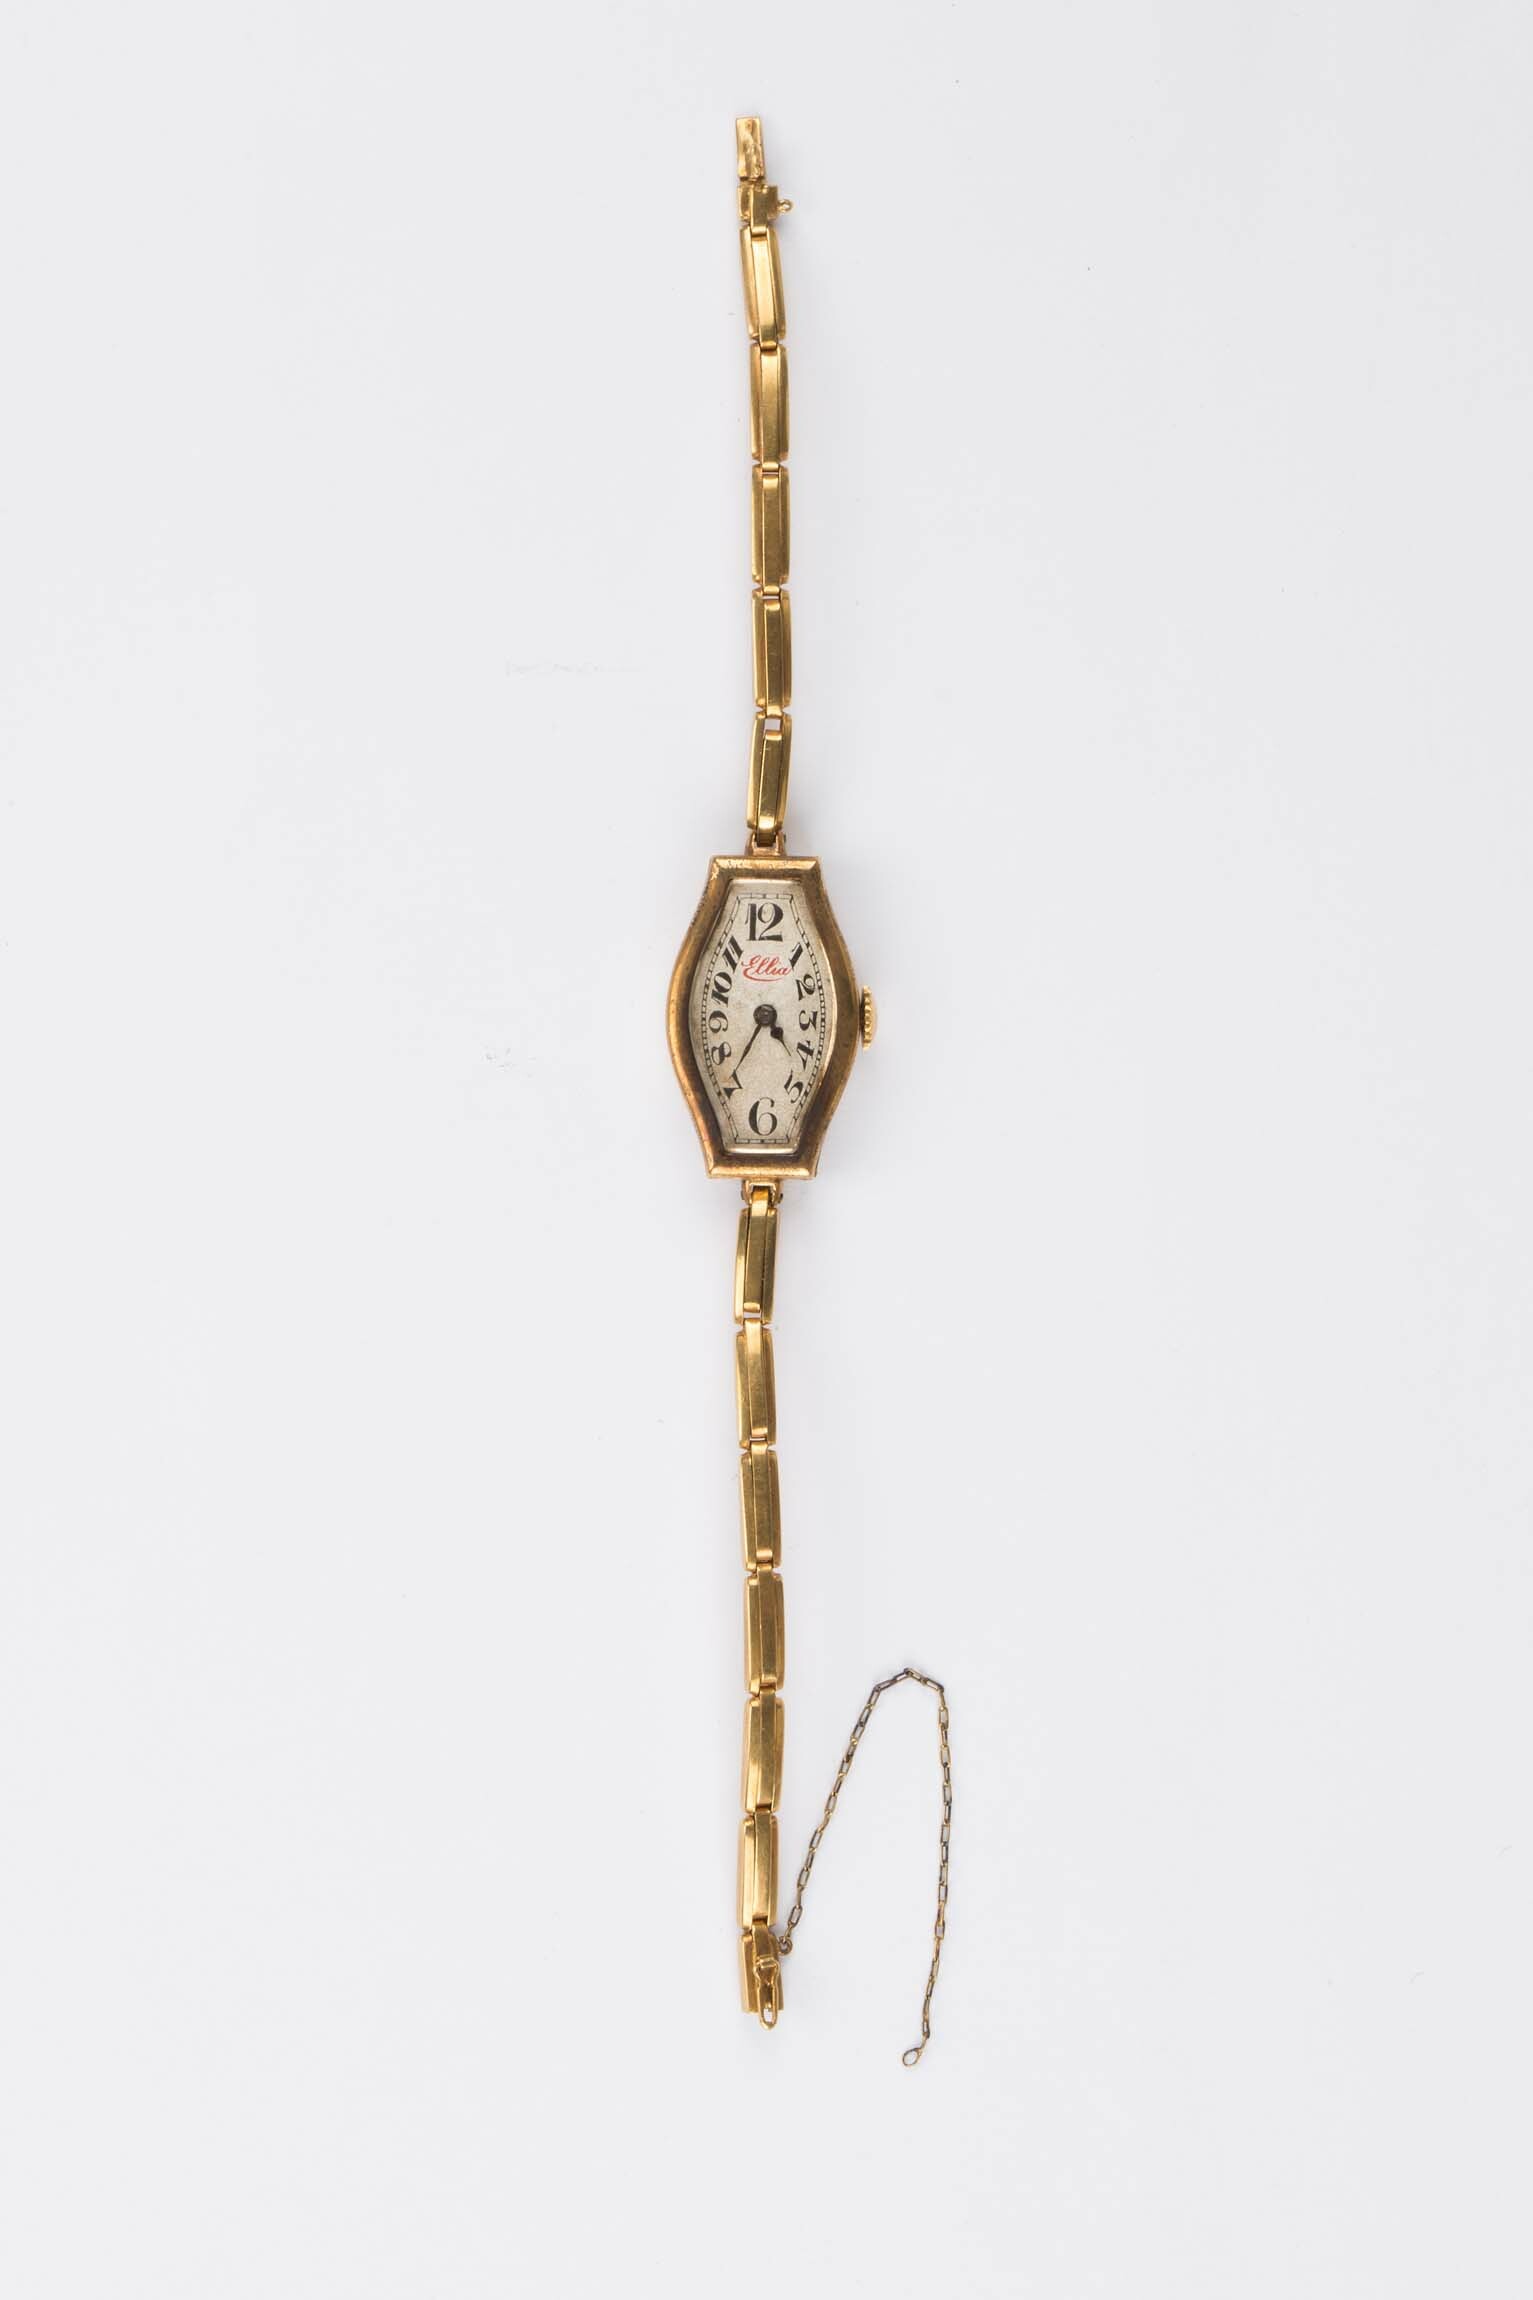 Armbanduhr Ellia, wohl Schweiz, um 1930 (Deutsches Uhrenmuseum CC BY-SA)